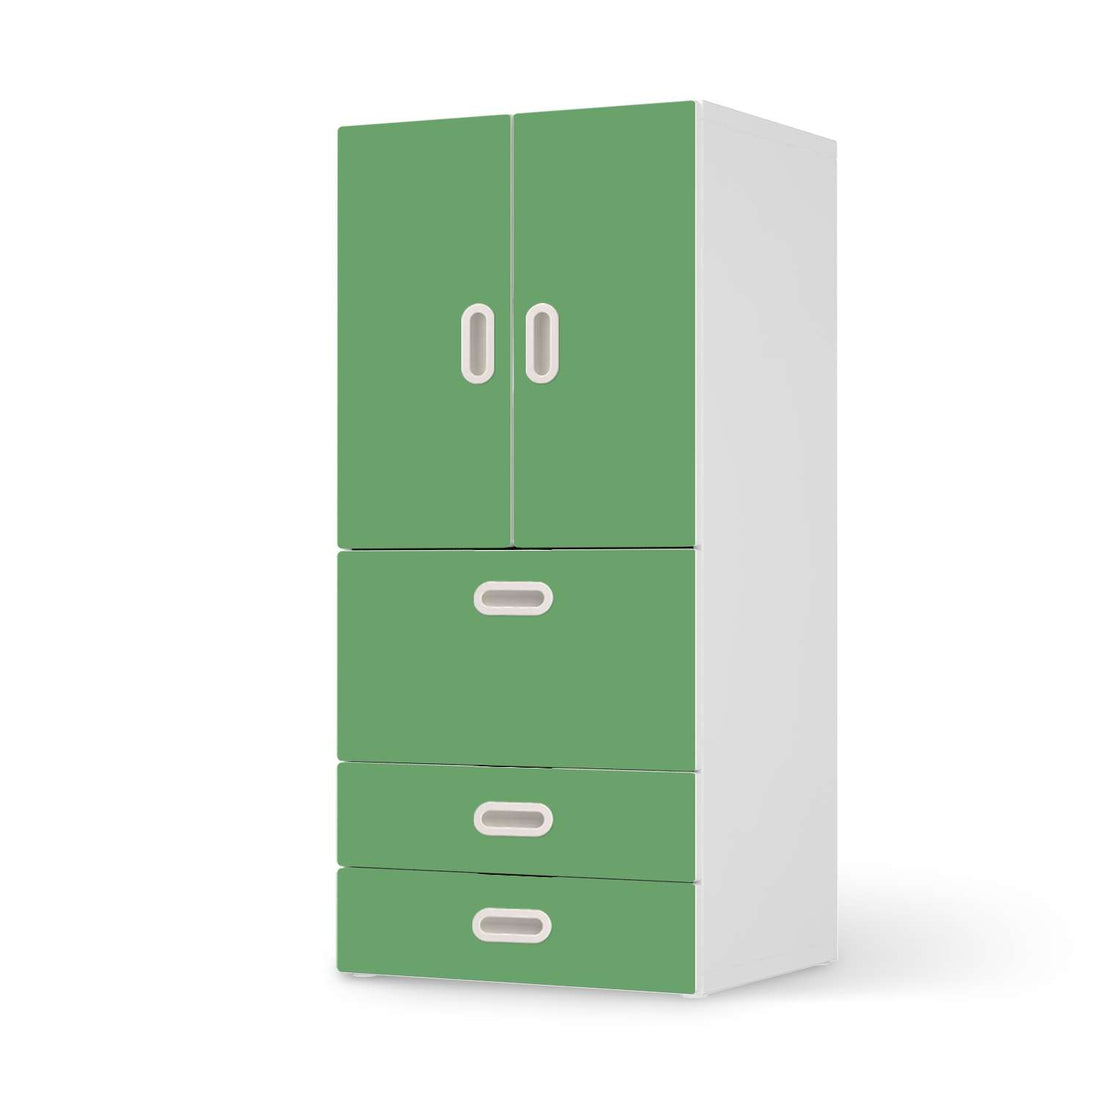 Möbelfolie Grün Light - IKEA Stuva / Fritids kombiniert - 3 Schubladen und 2 kleine Türen  - weiss